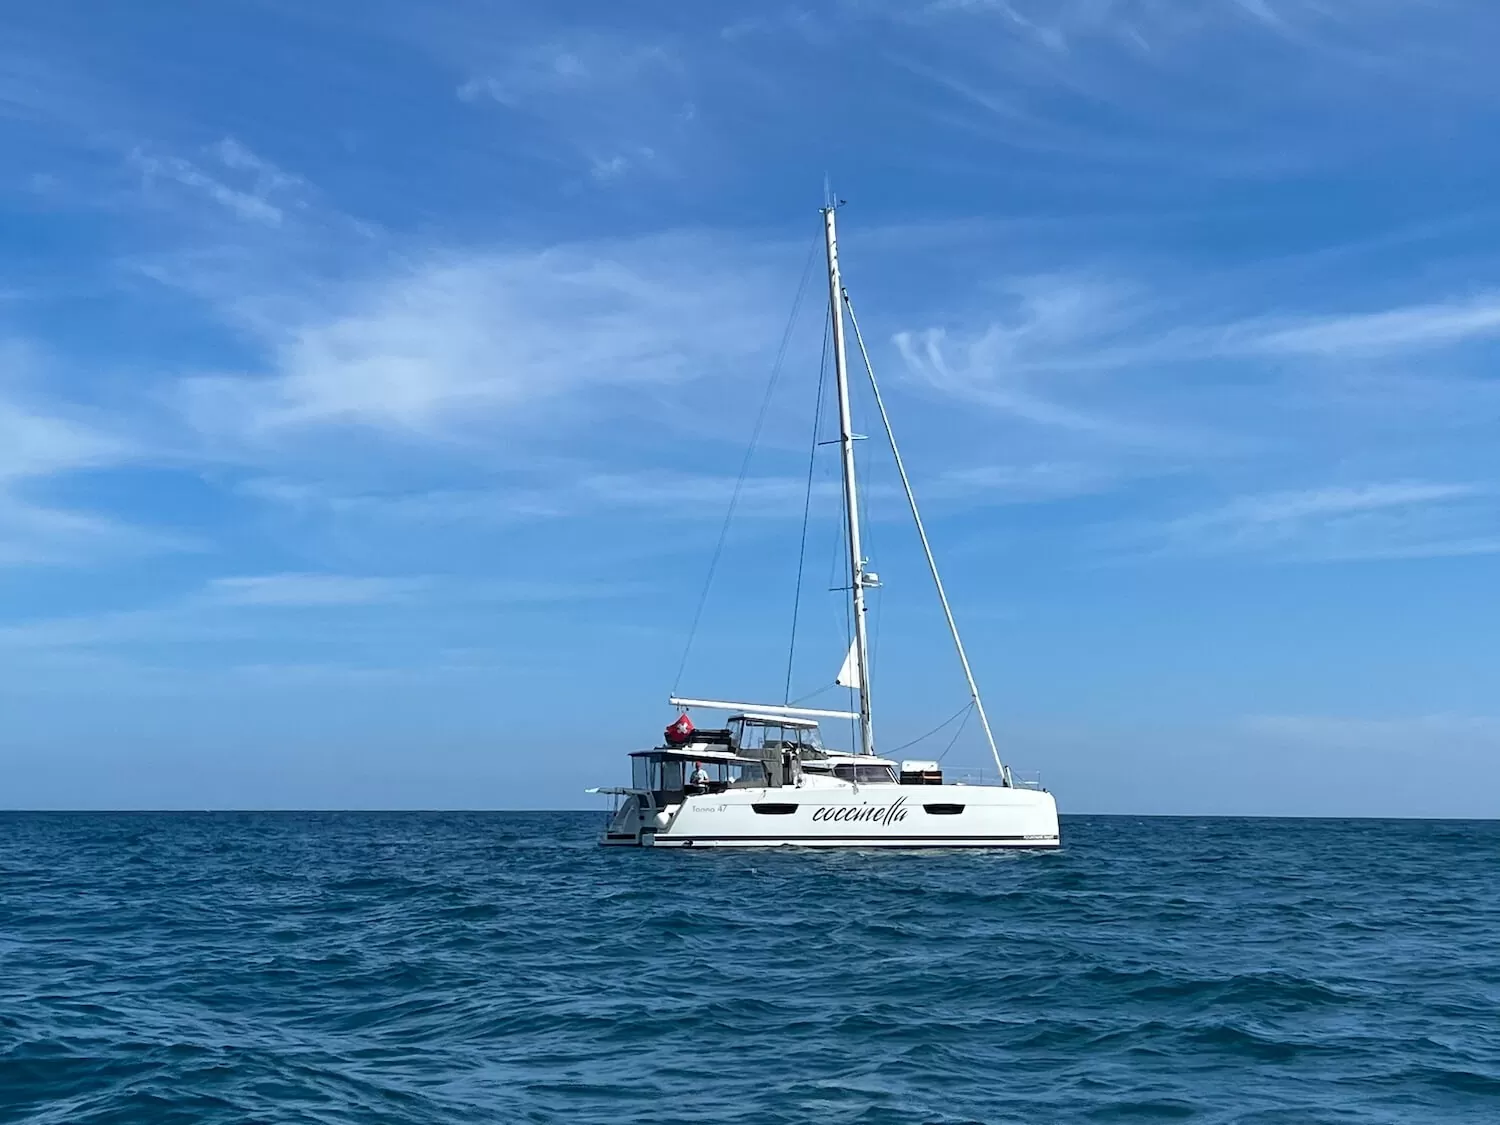 Coccinella Yacht auf hoher See